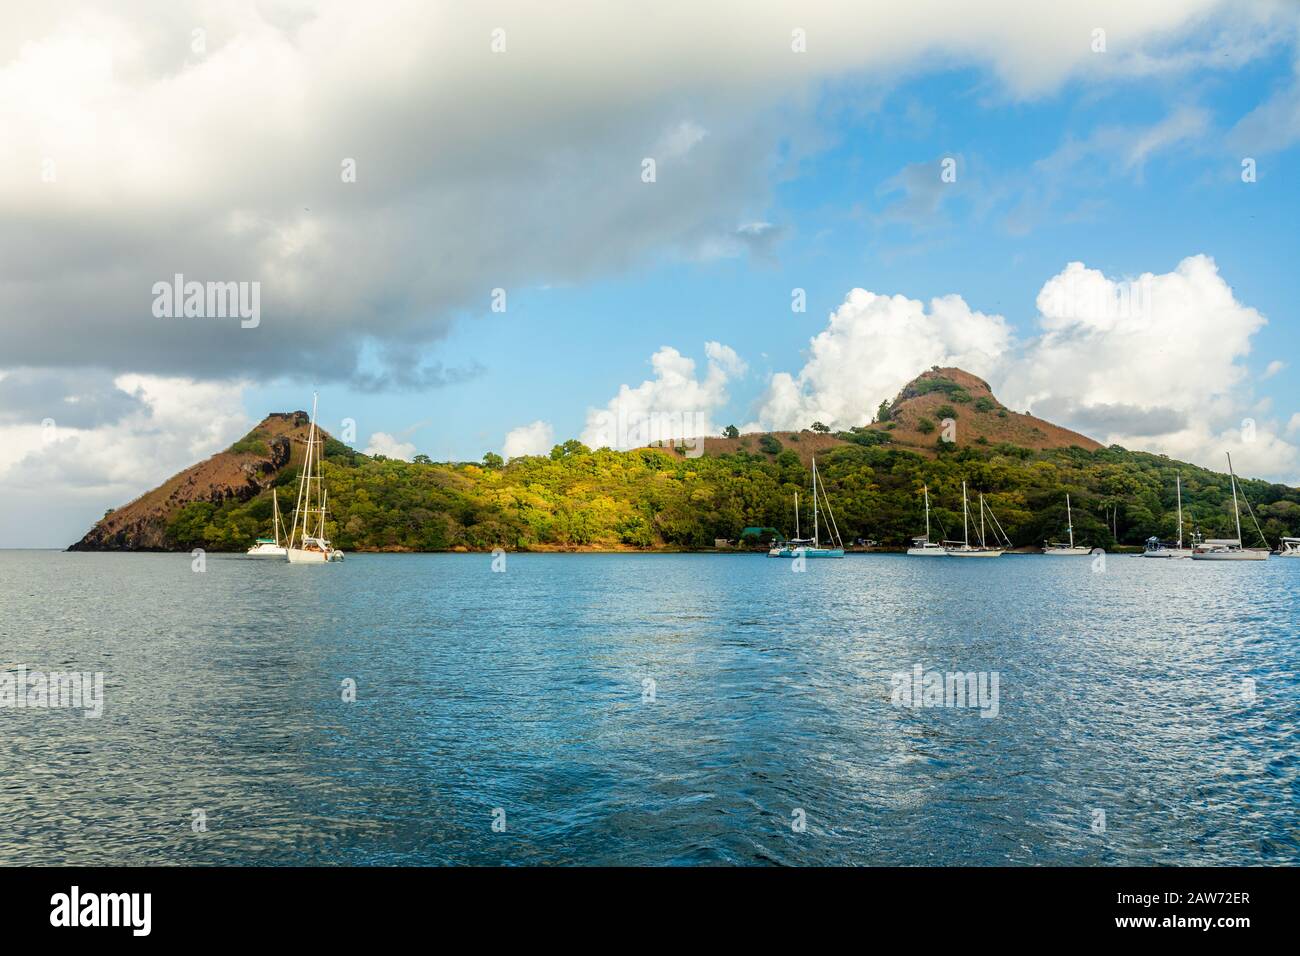 Bateaux amarrés à l'île Pigeon, la baie Rodney, Sainte-Lucie, mer des Caraïbes Banque D'Images